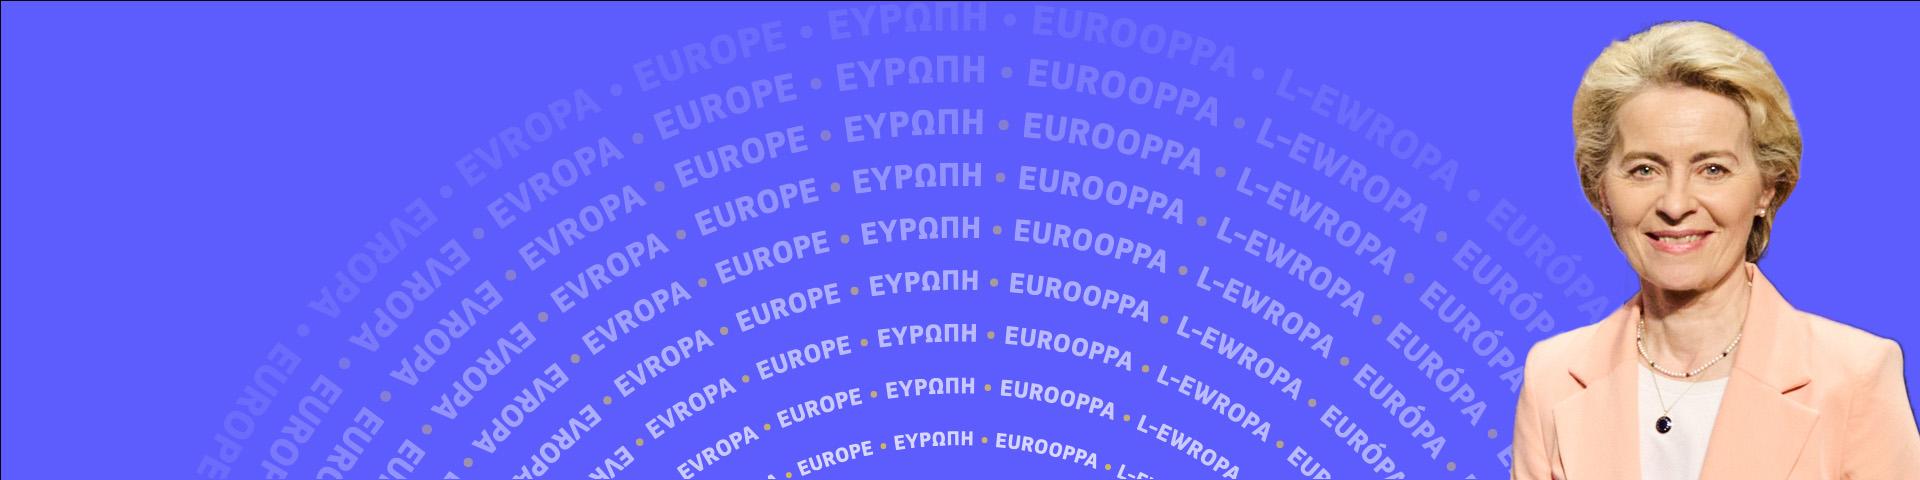 Rede zur Lage der EU: Ursula von der Leyen